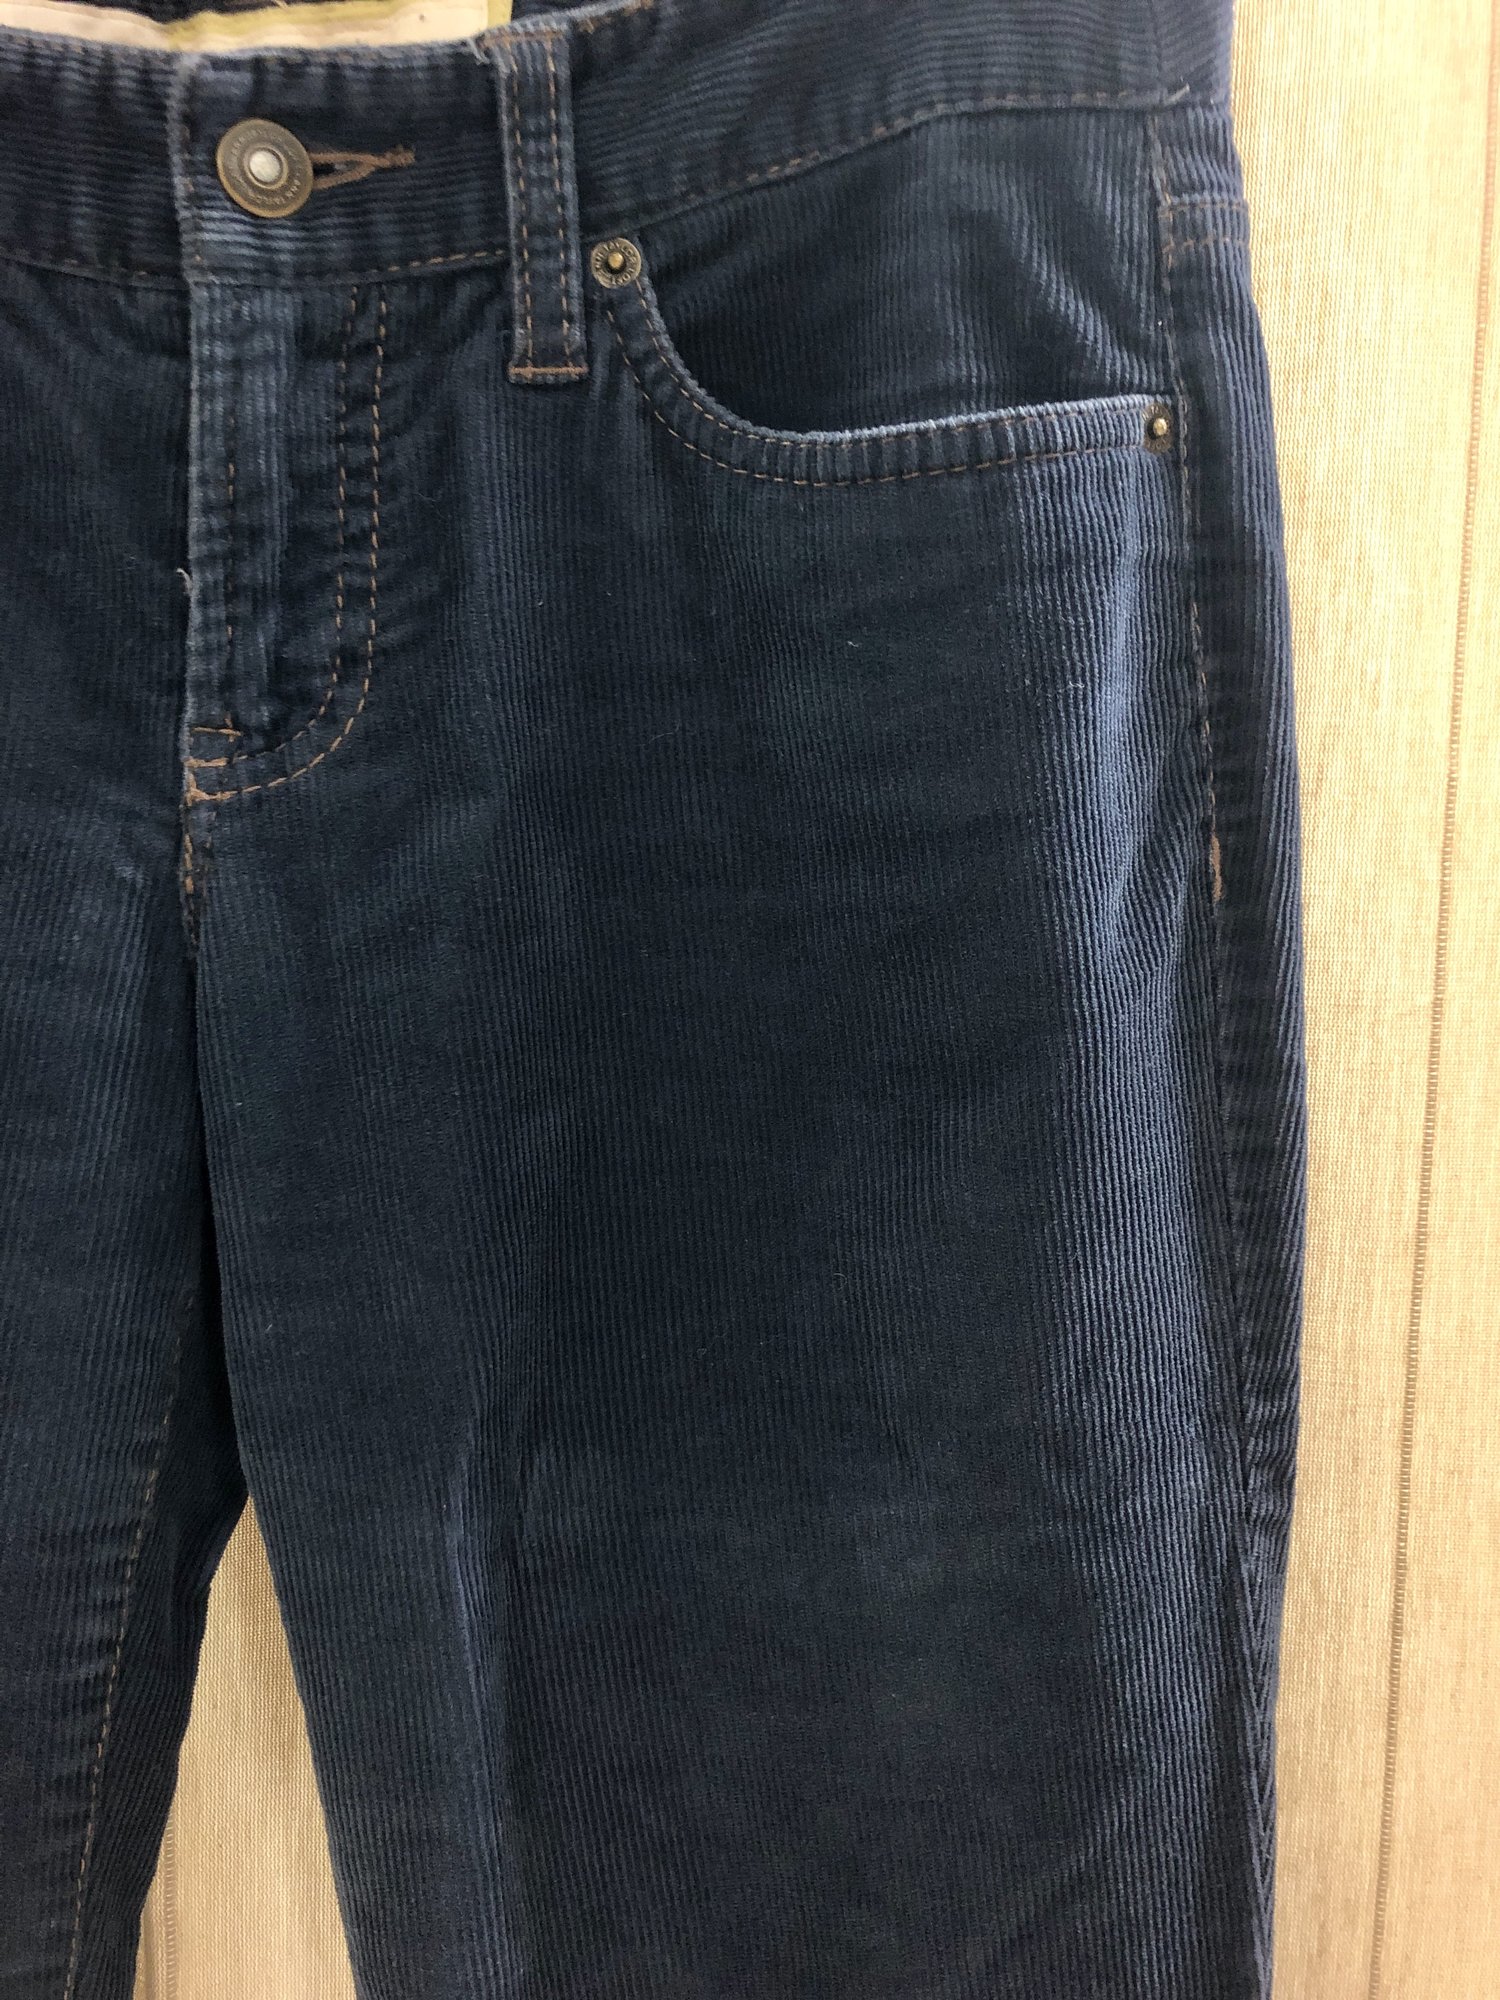 LOFT Corduroy Pants - Stitched Up